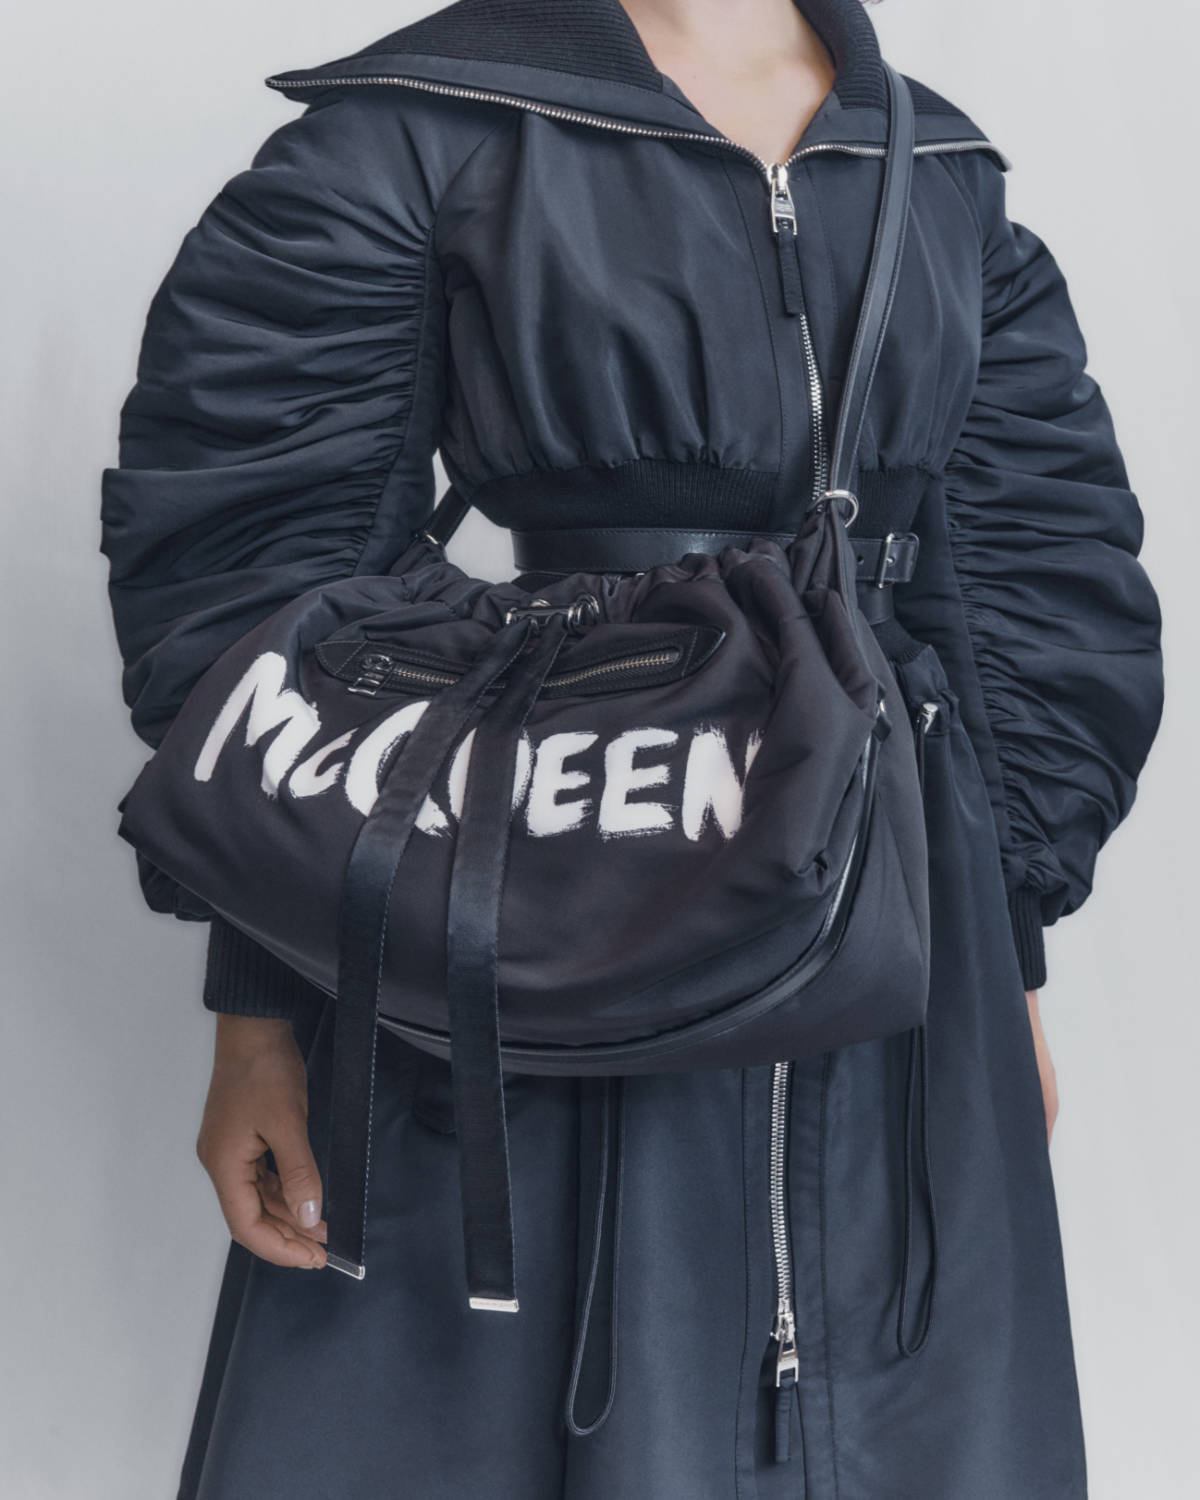 Alexander McQueen: The Bundle Bag